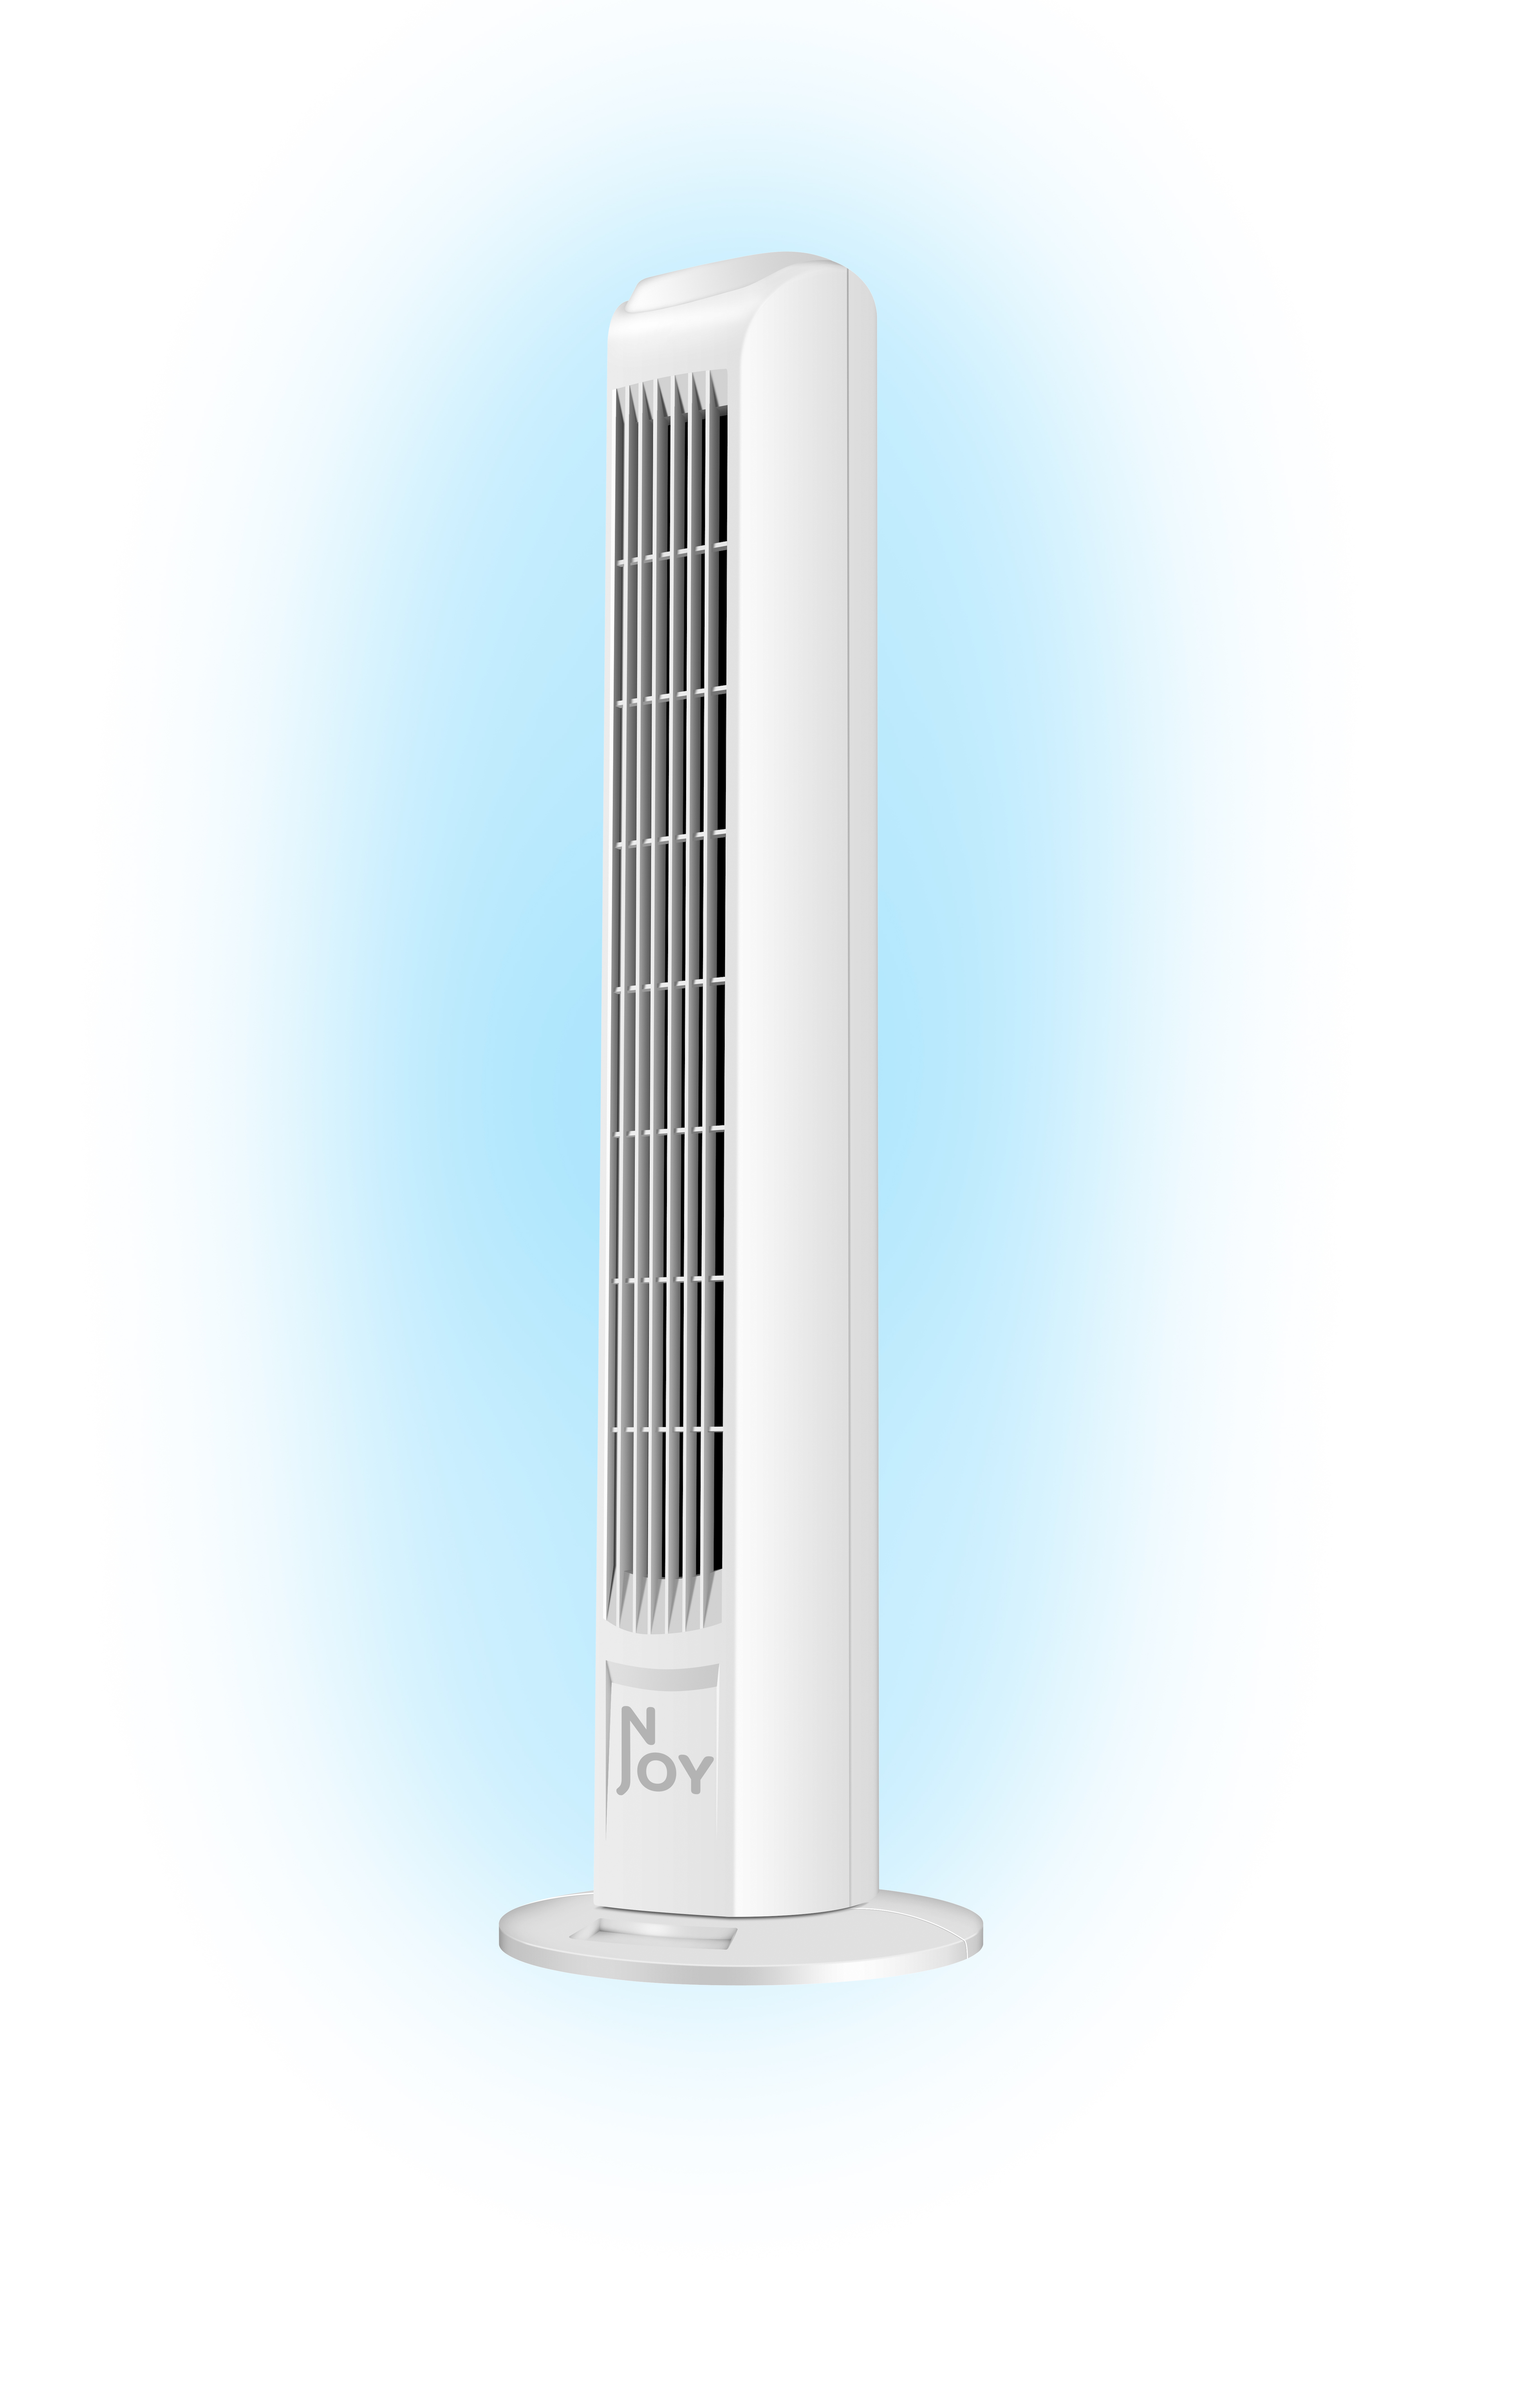 NJOY Ventilator - Turm - - Sicher Turm Turmventilator Superkuehlung Geschwindigkeiten 50W - Weiss - 3 - - Weiß